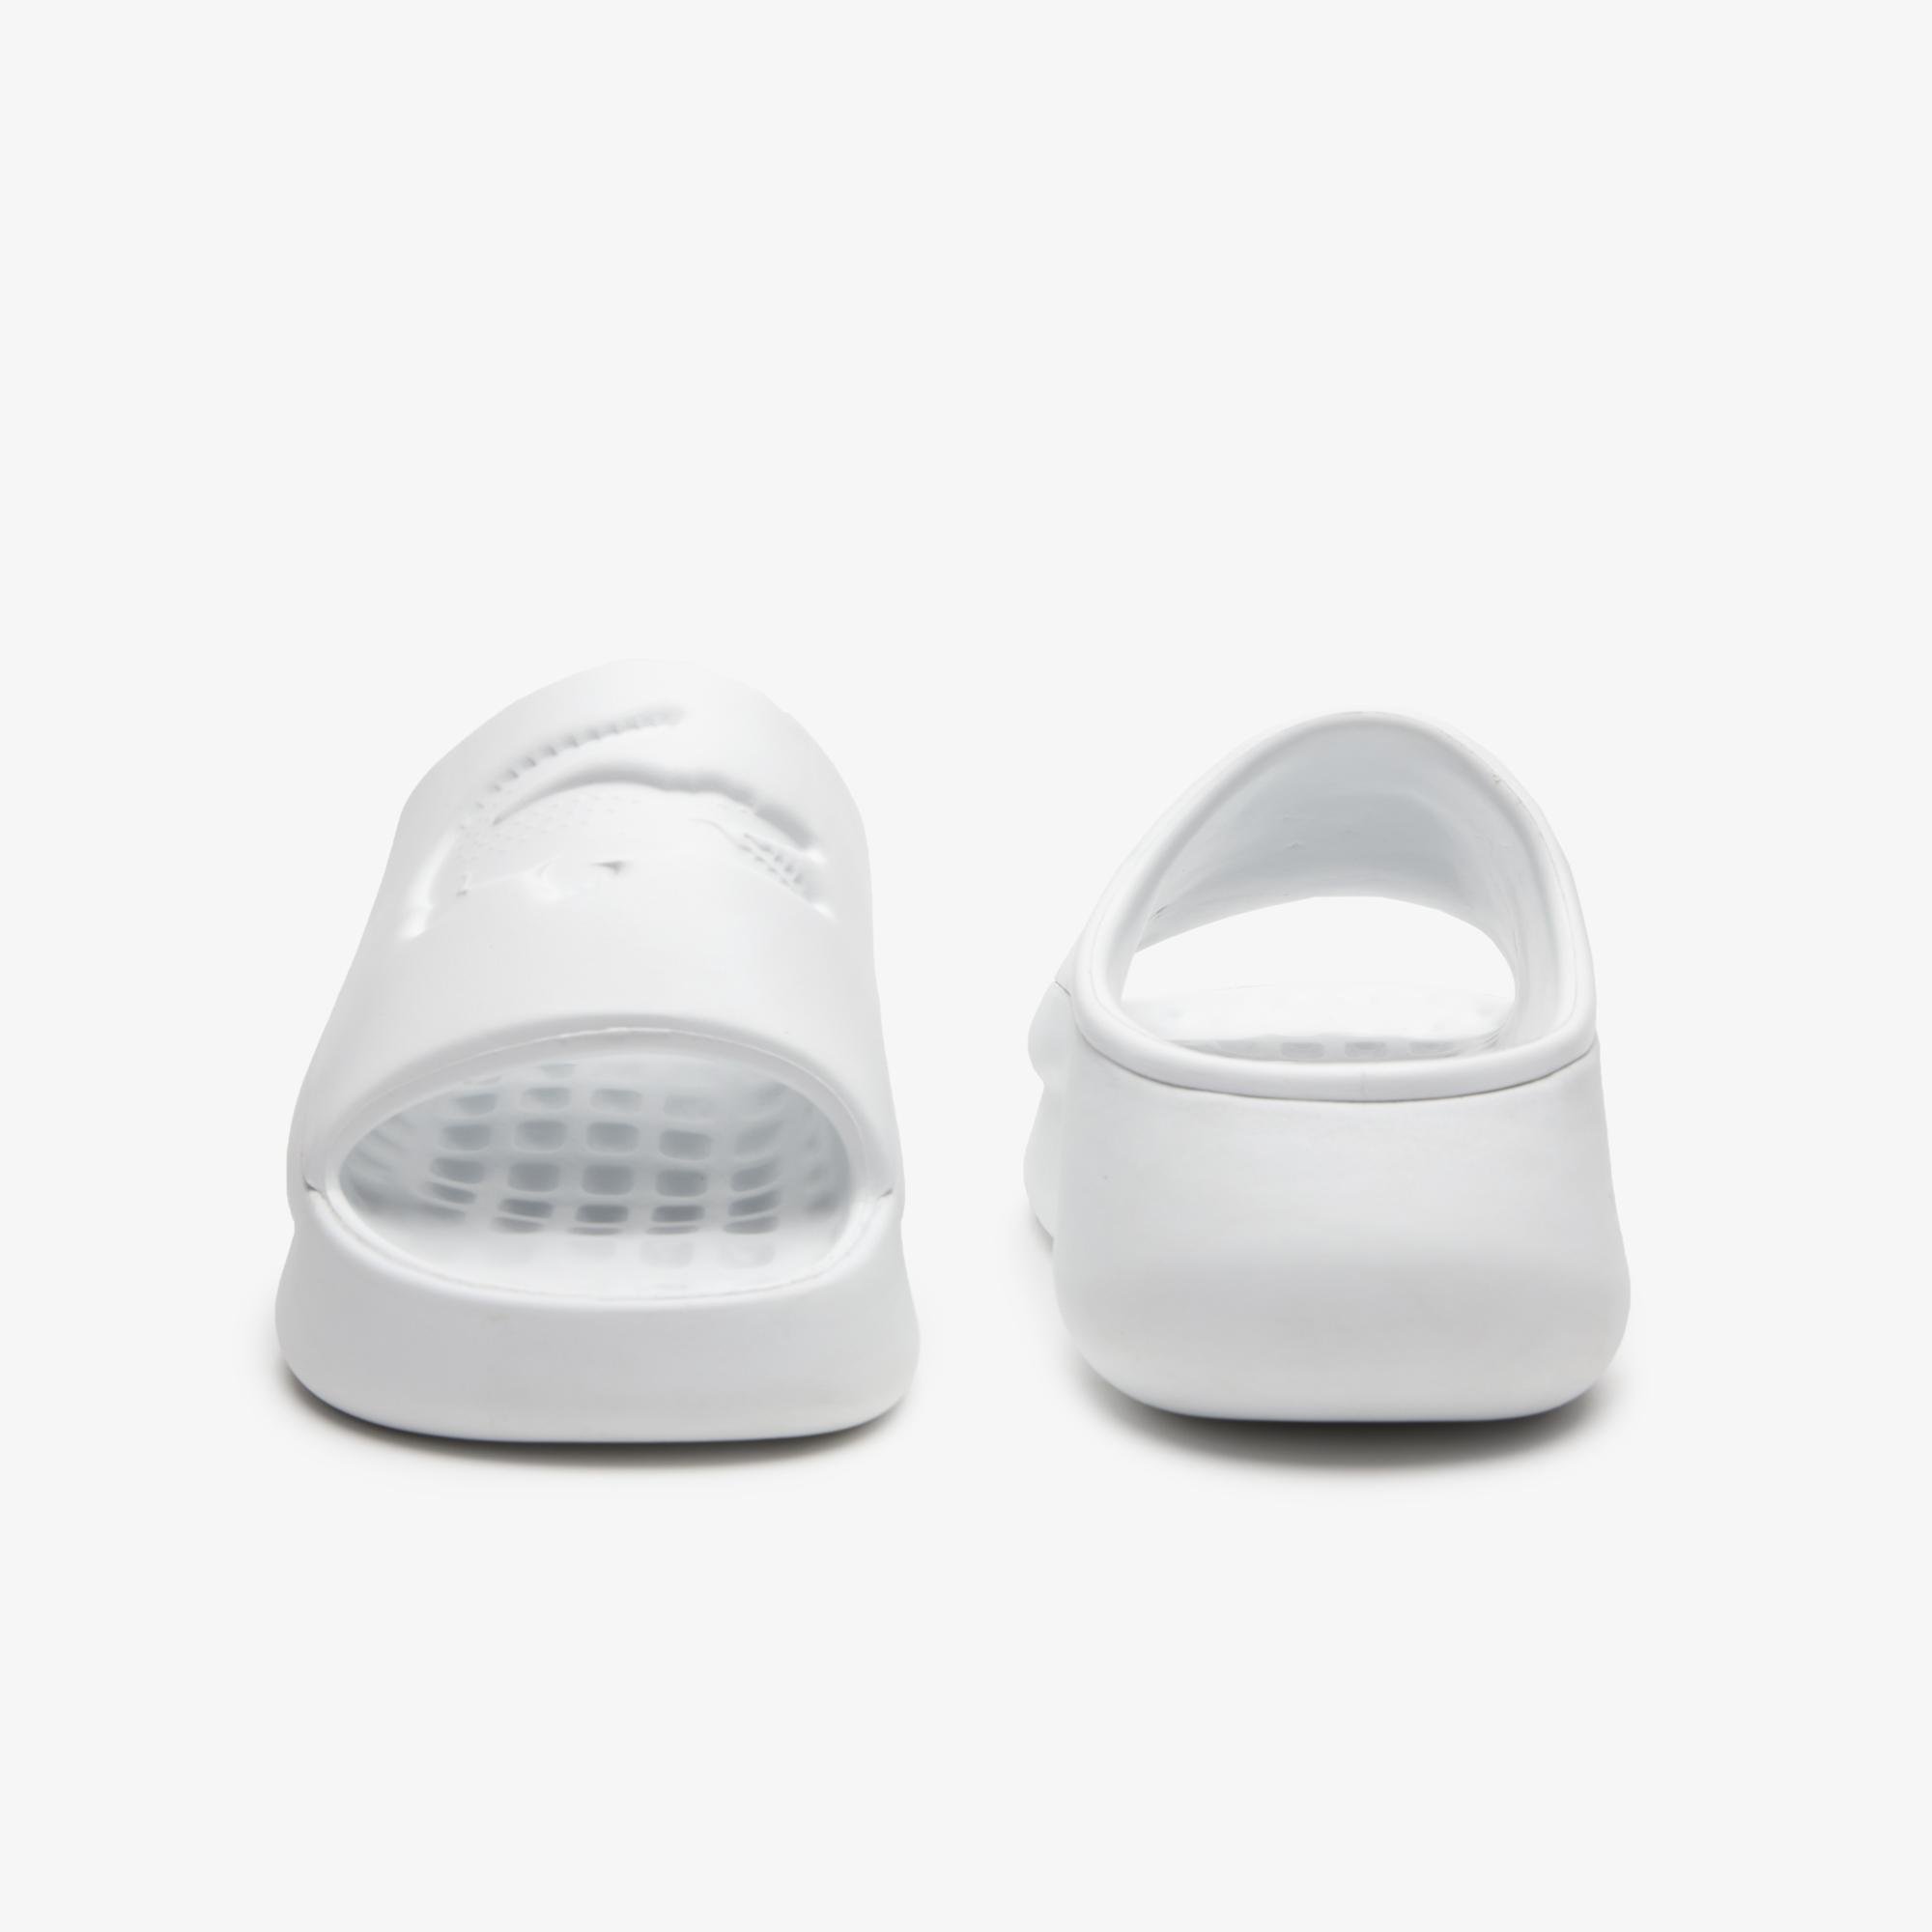 White men's slippers Lacoste Croco 3.0